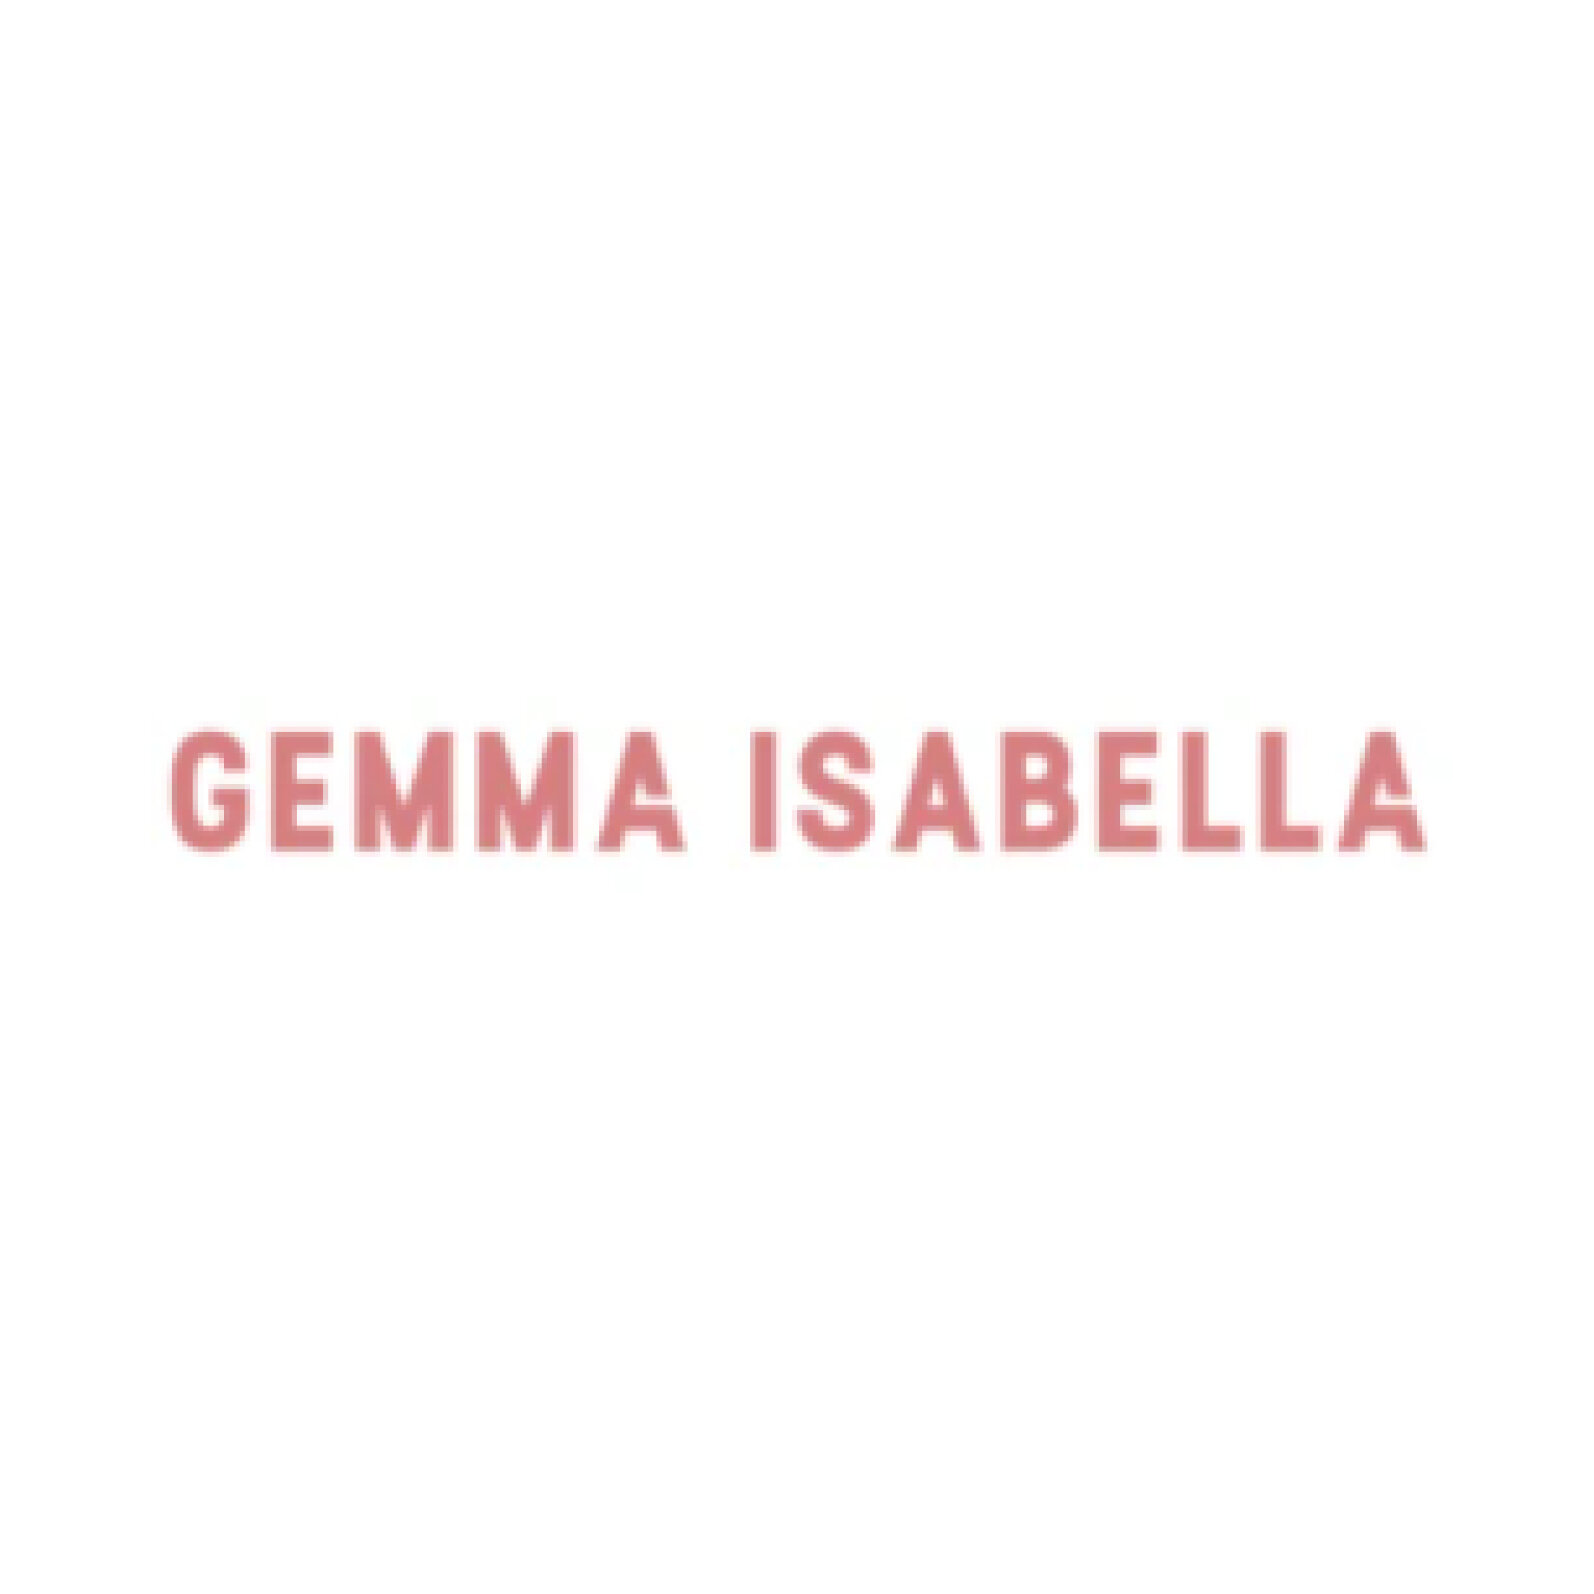 Jessica Abraham Gemma Isabella Logo.jpg